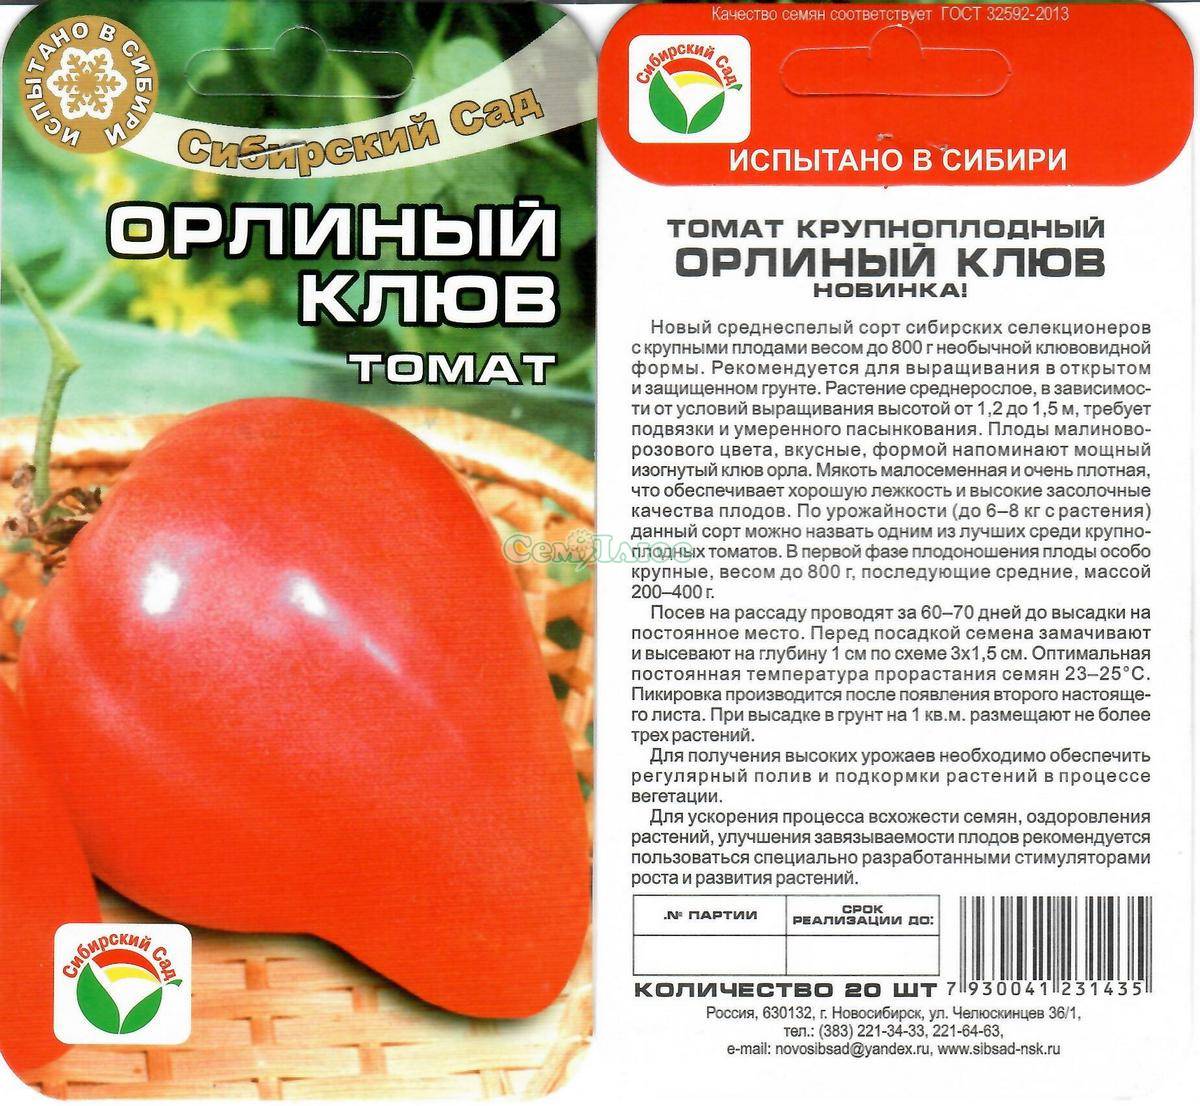 Сорт томата орлиный клюв - описание, фото, отзывы